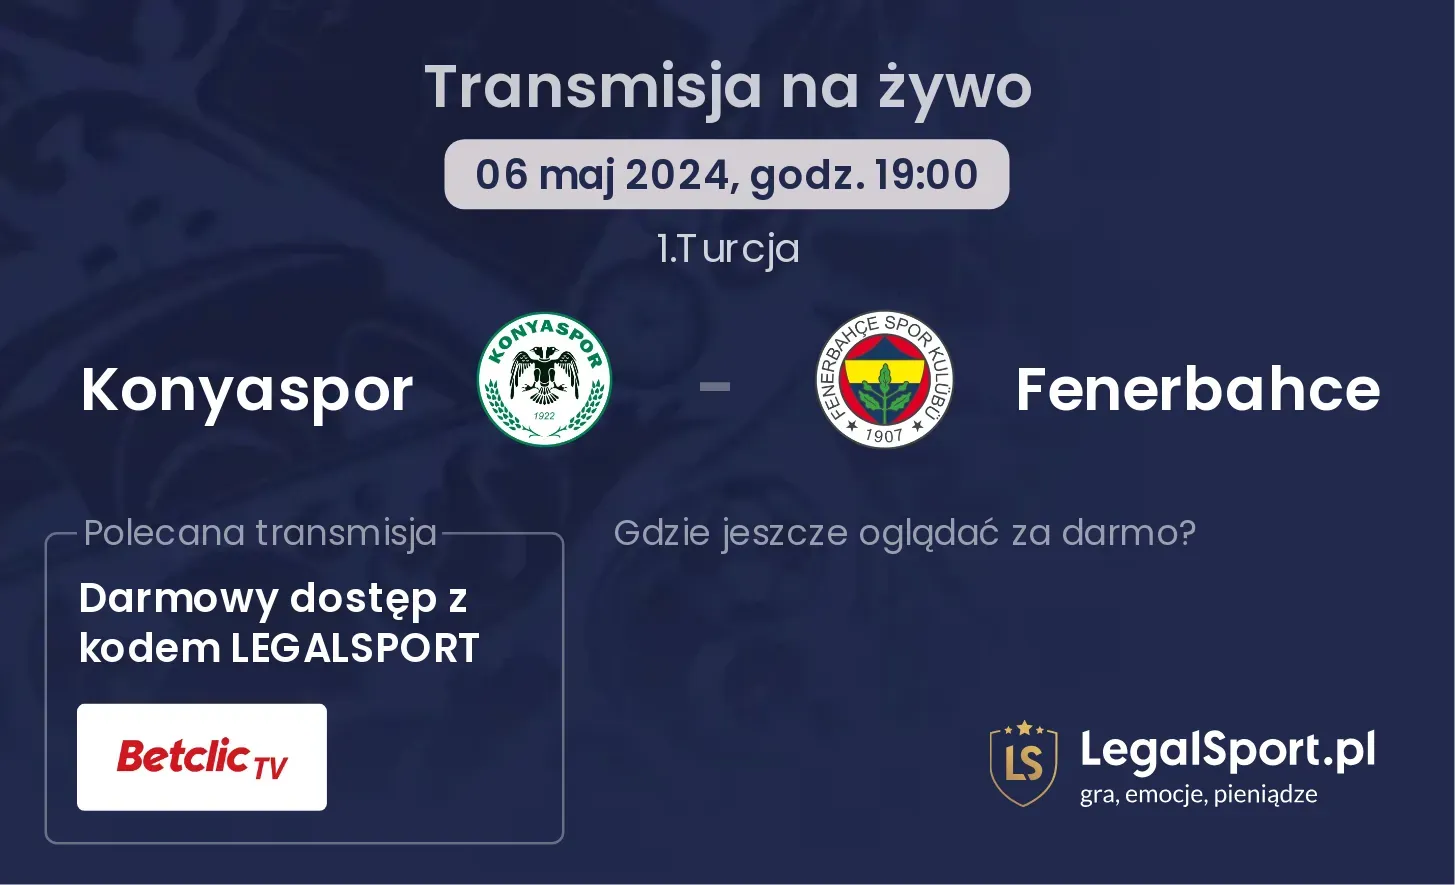 Konyaspor - Fenerbahce transmisja na żywo